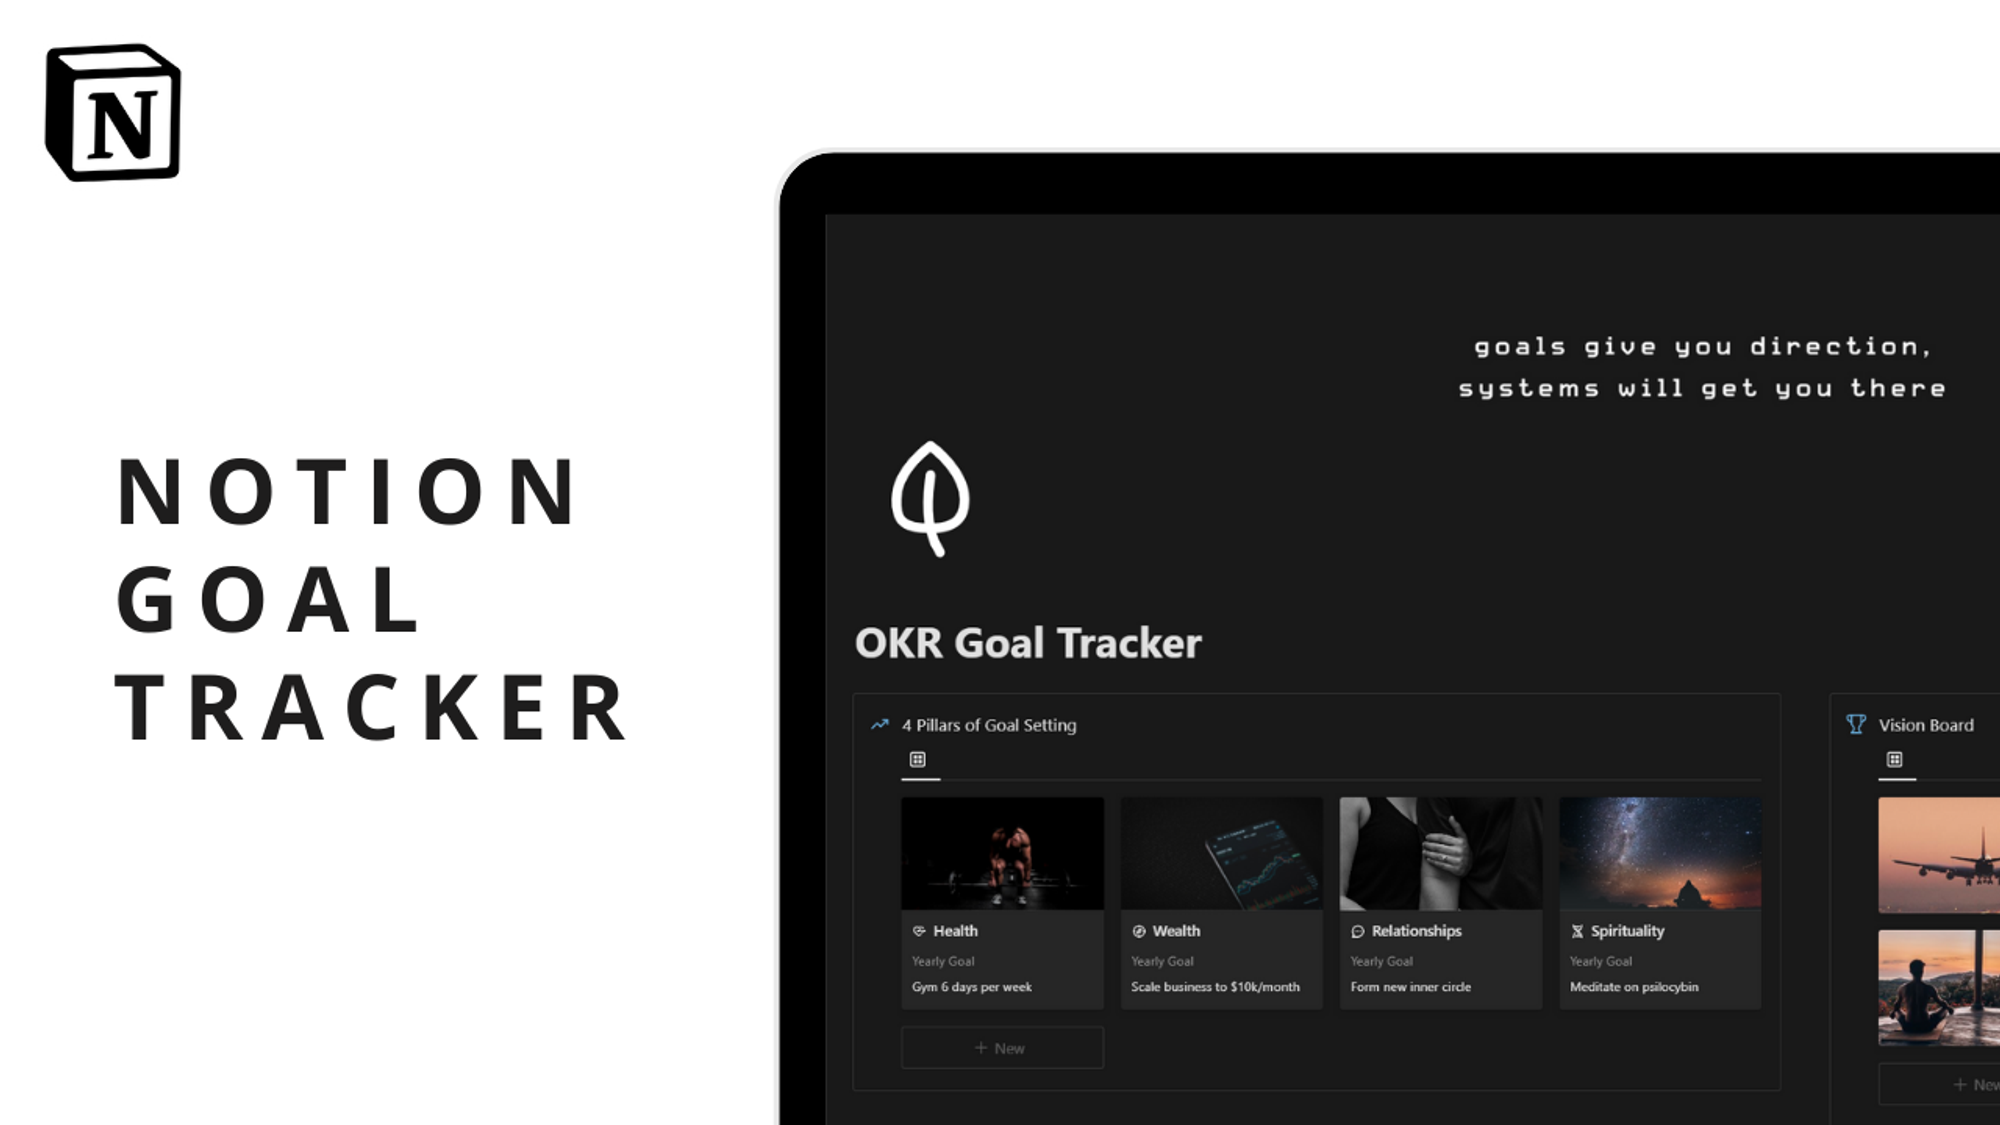 OKR Goal Tracker